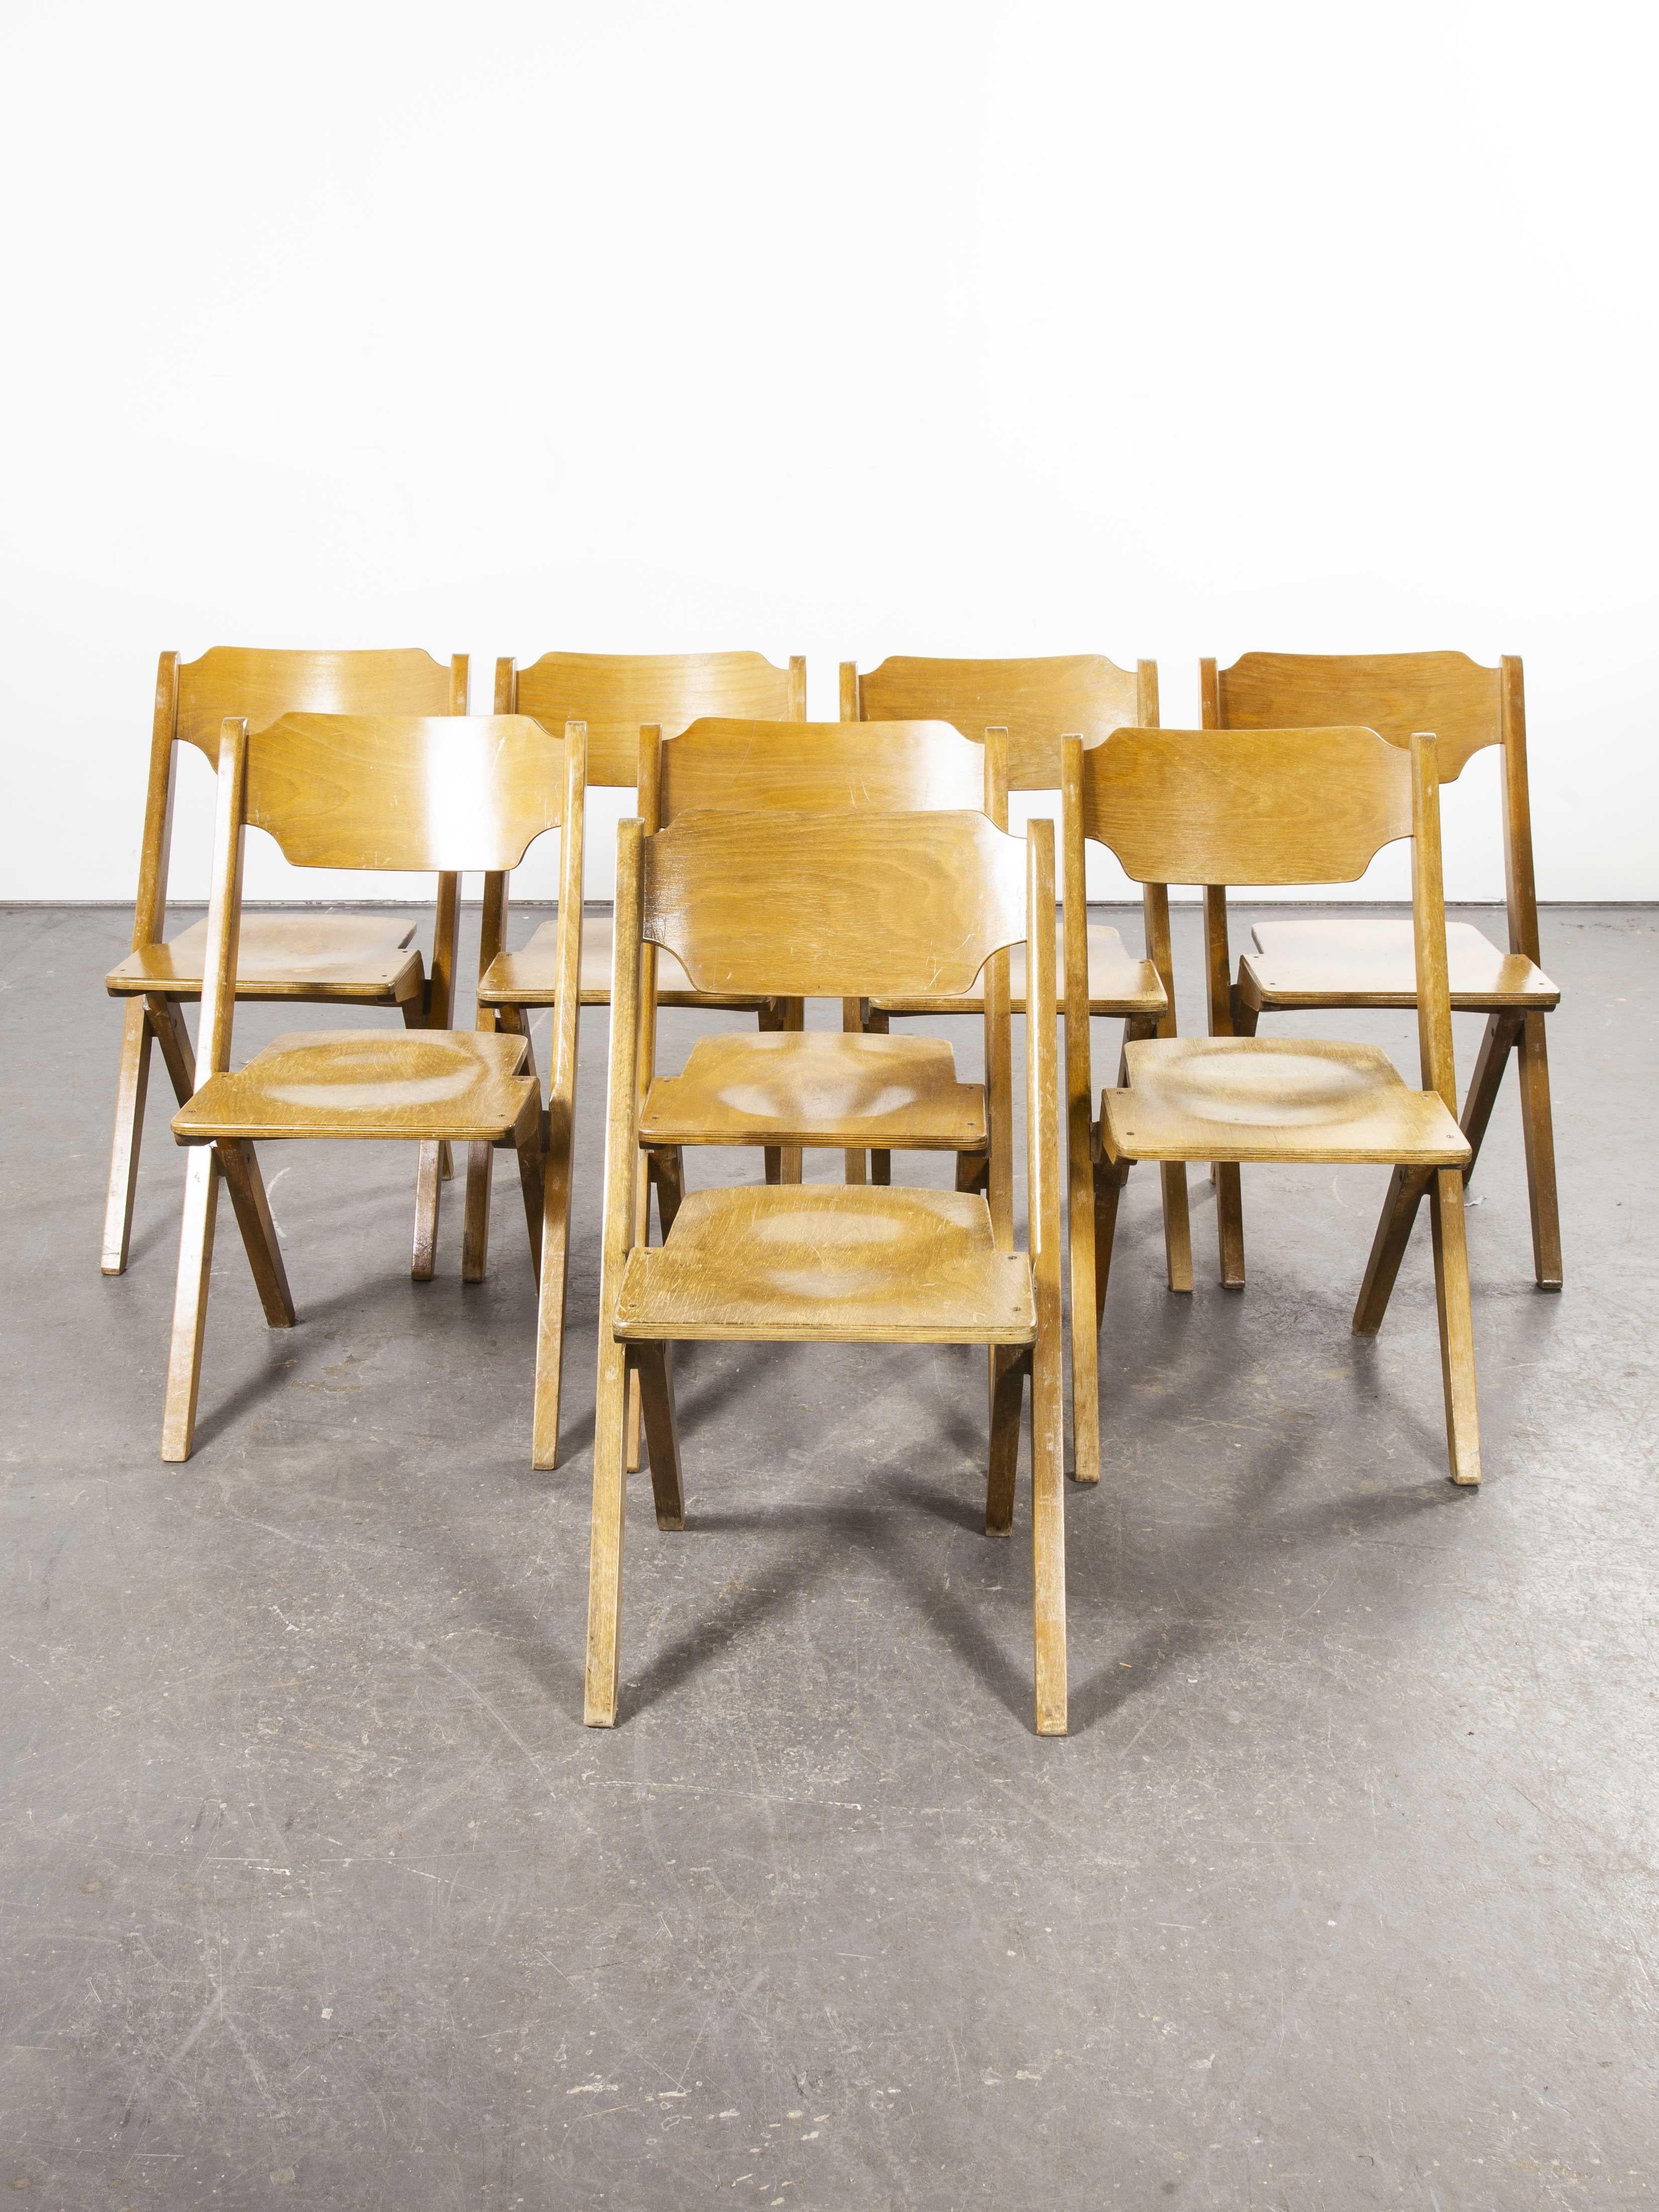 1960er Jahre Bombenstabil stapelbare Stühle aus Buche, Satz von acht

1960er Jahre Bombenstabil stapelbare Esszimmerstühle aus Buche, Satz von acht. Wir glauben, dass diese Stühle in den 1950er Jahren von Bombenstabil in Deutschland hergestellt